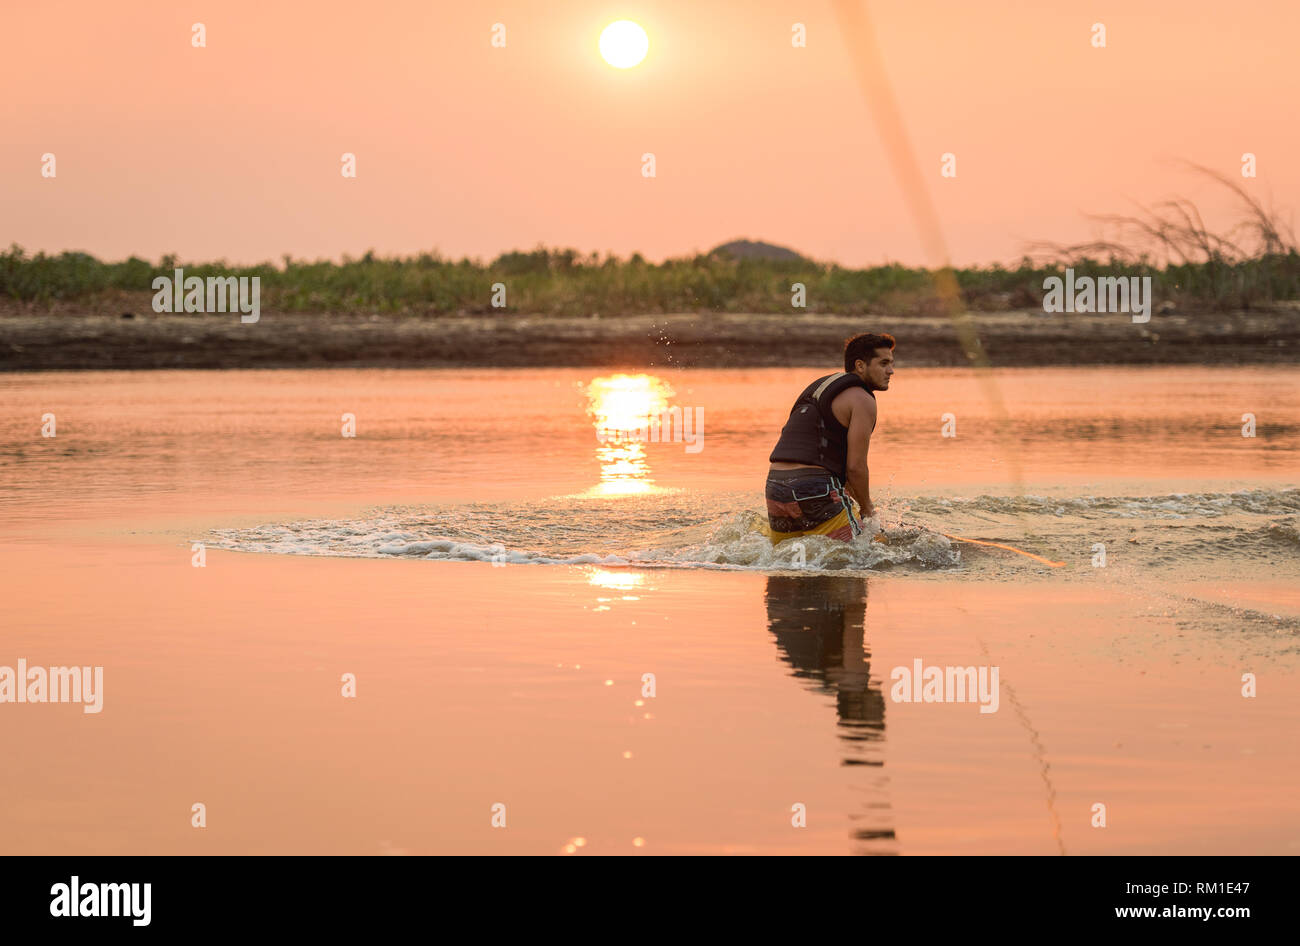 Sunset wakeboarding Stock Photo